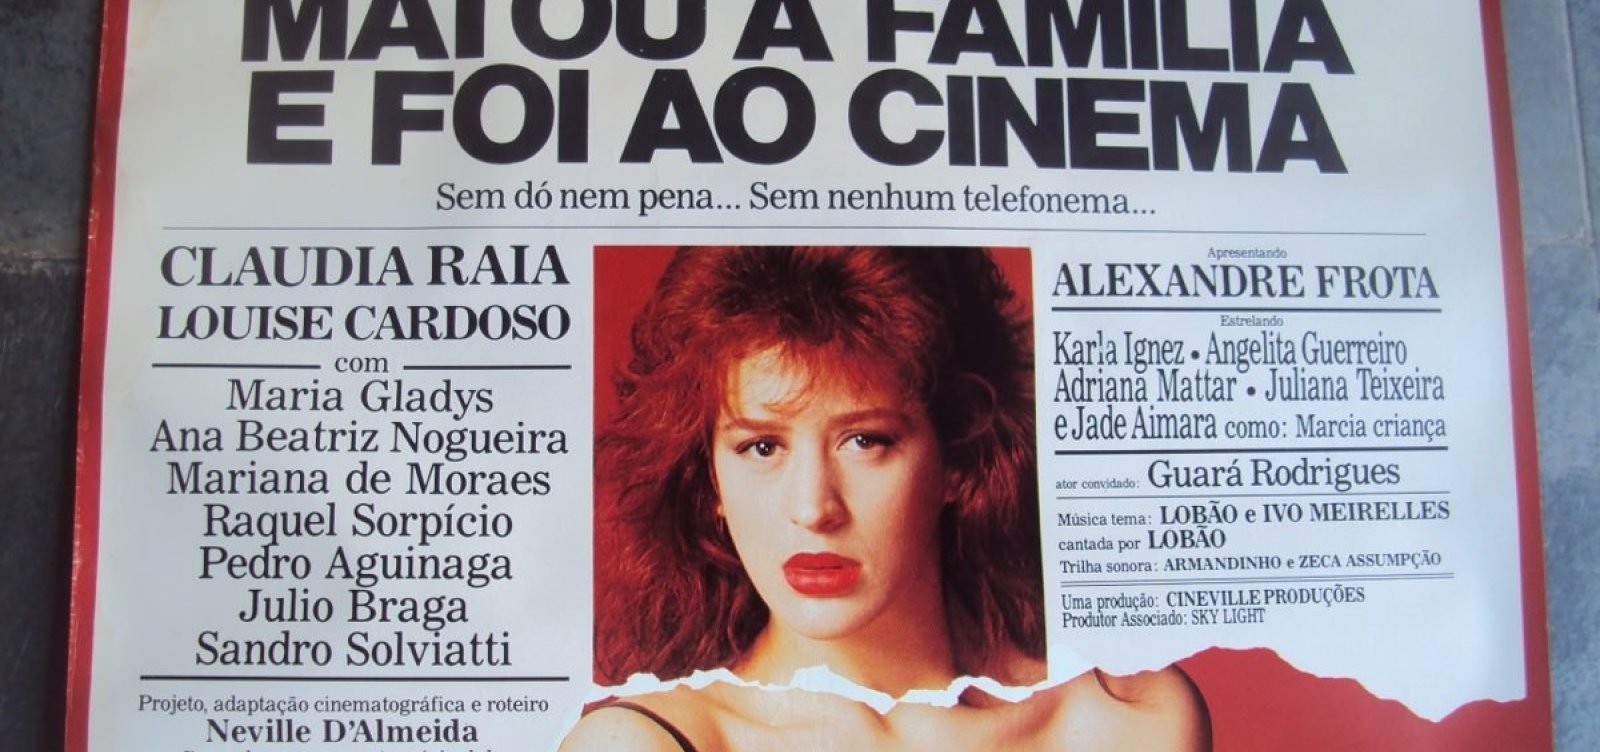 Claudia Raia relembra atuação em filme erótico: 'Tenho o maior orgulho'